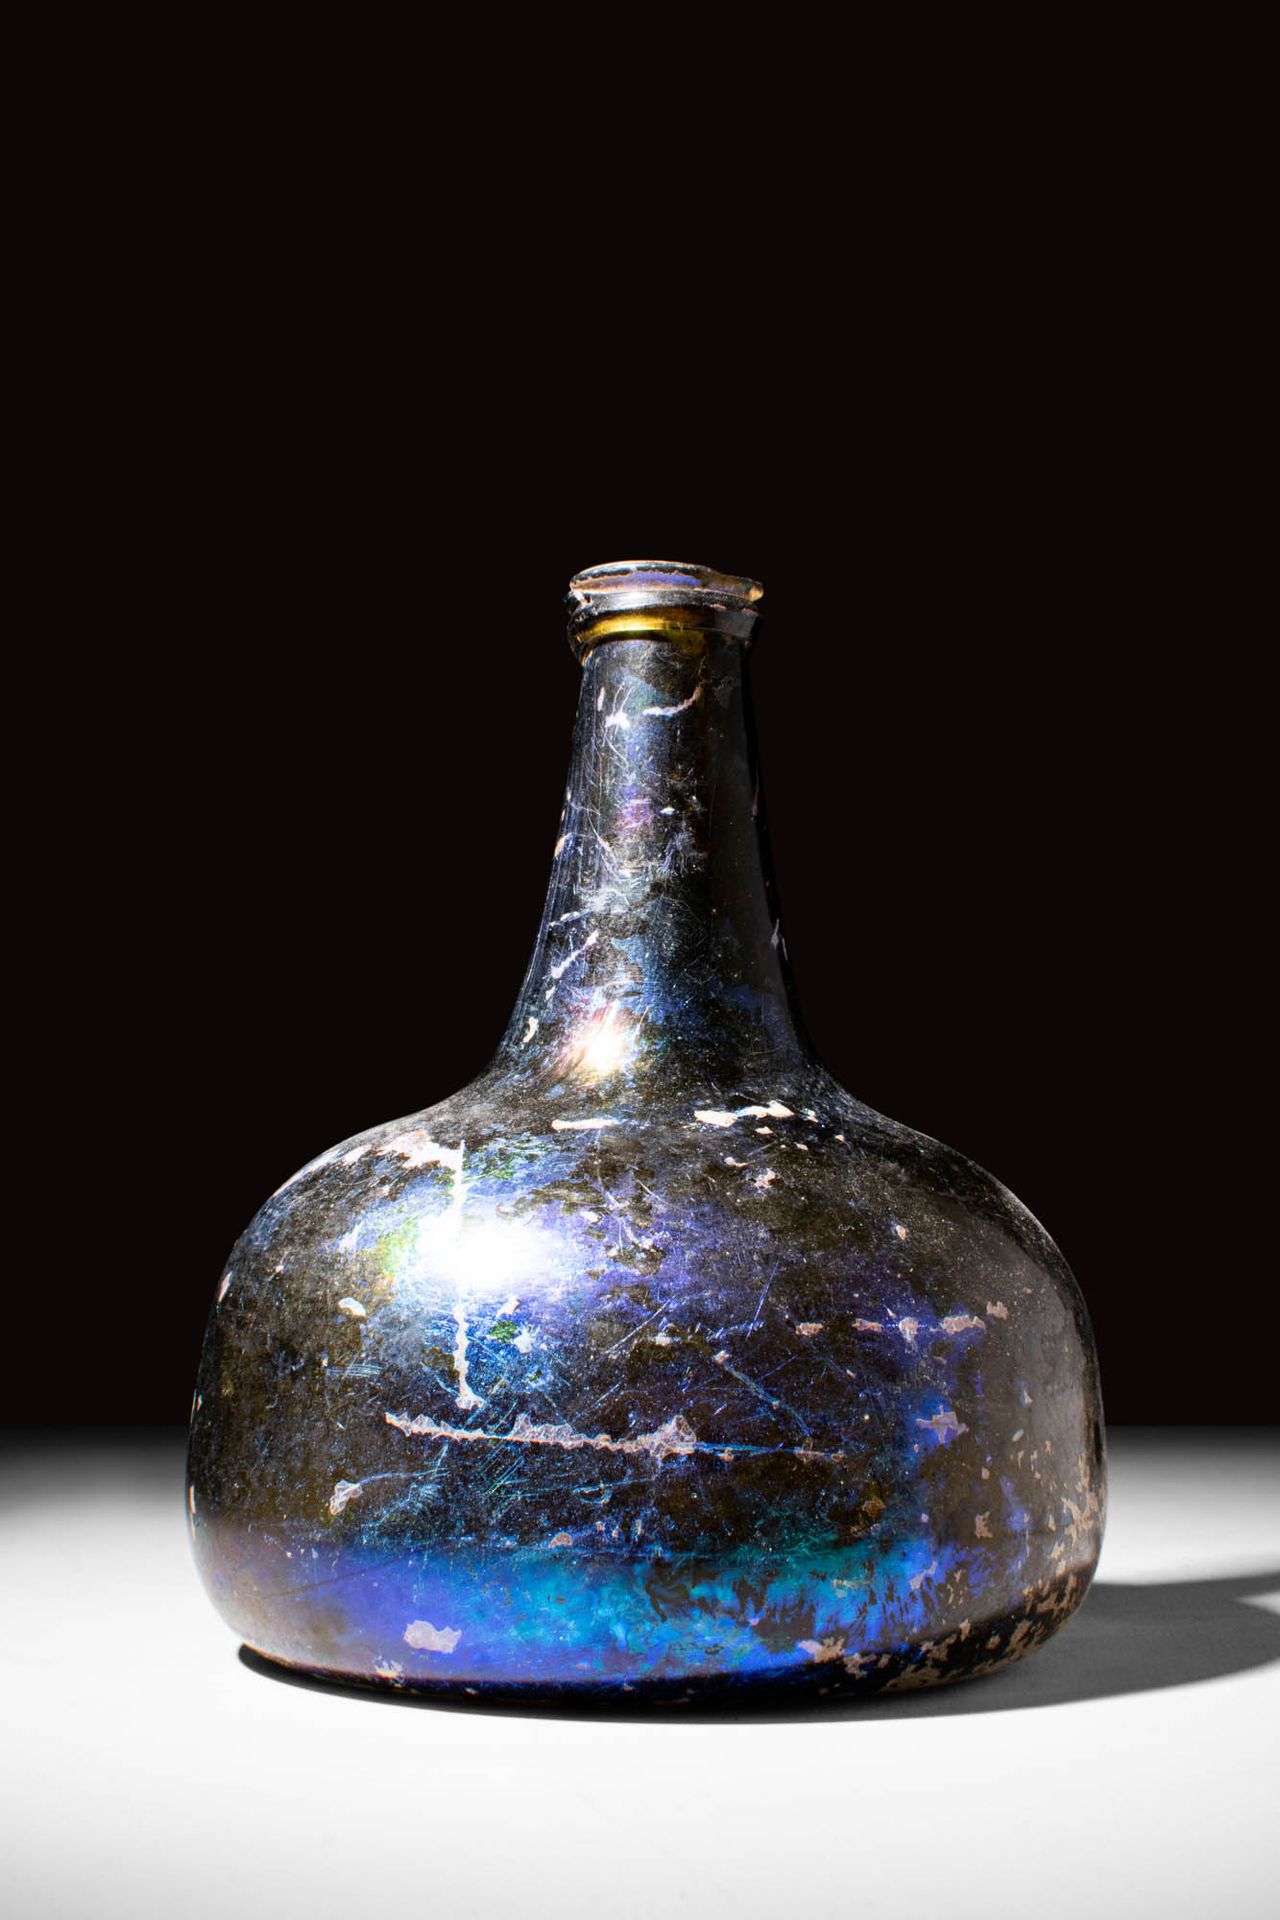 POST MEDIEVAL BLUE GLASS WINE OR RUM BOTTLE Ca. UM 1400 - 1700.
Eine nachmittela&hellip;